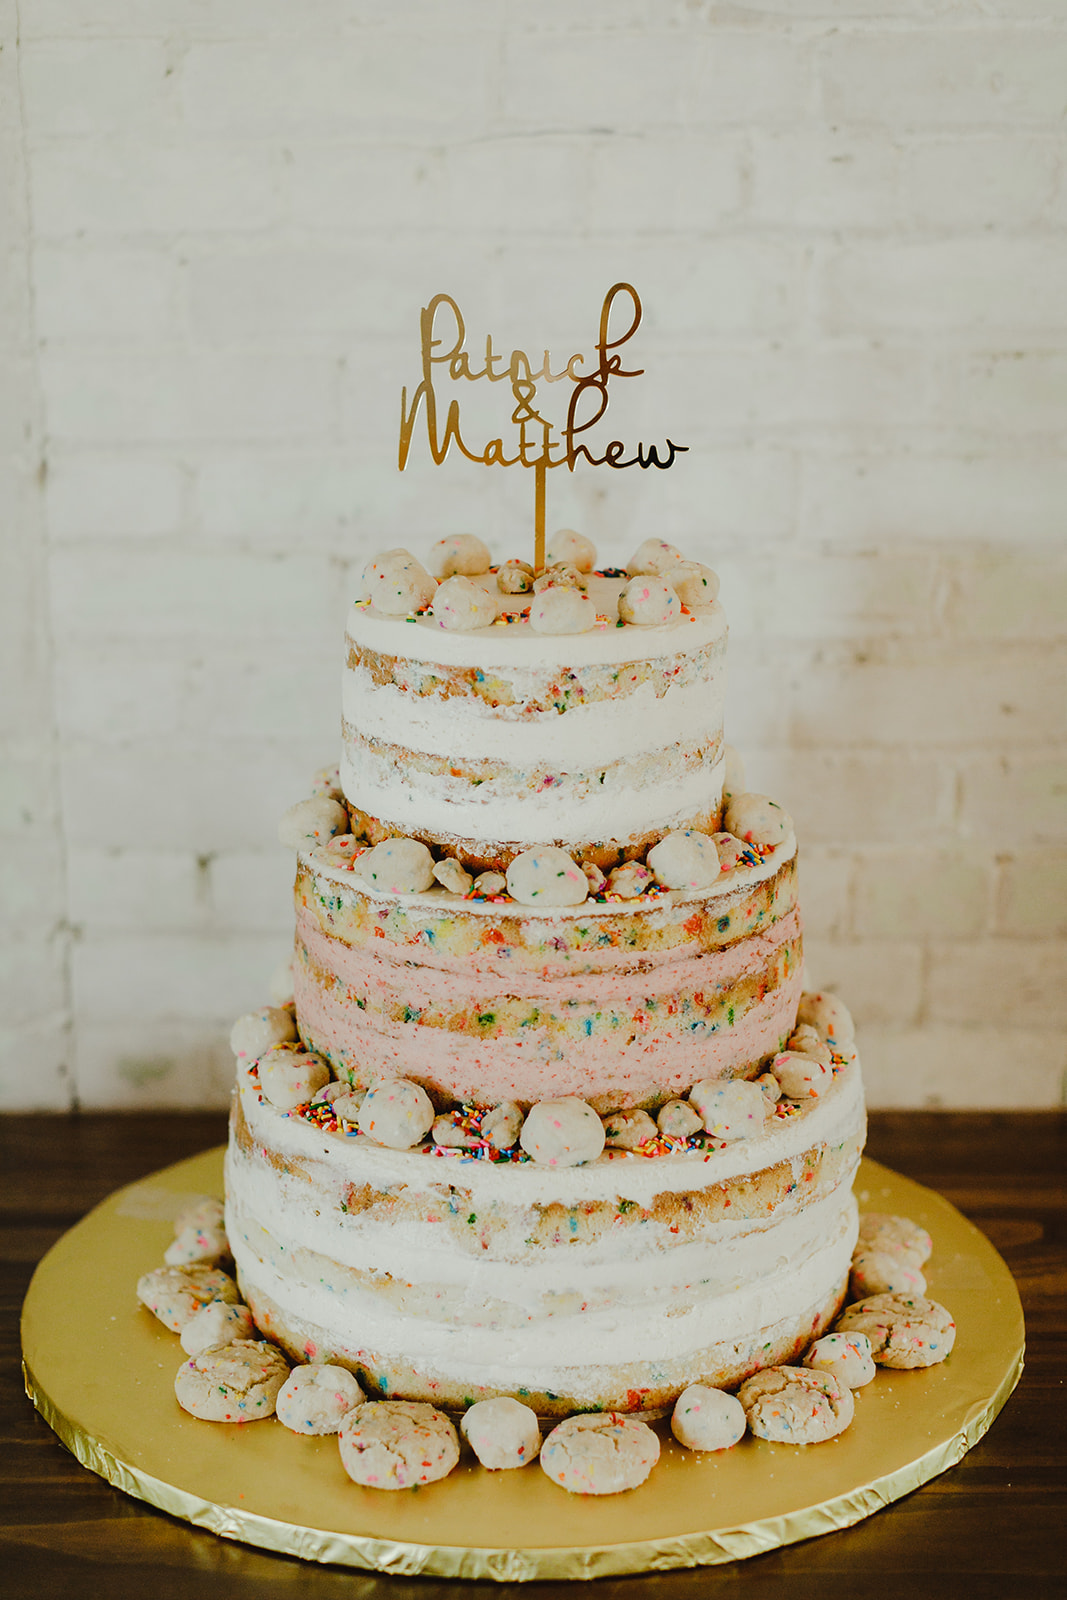 A milk bar wedding cake 